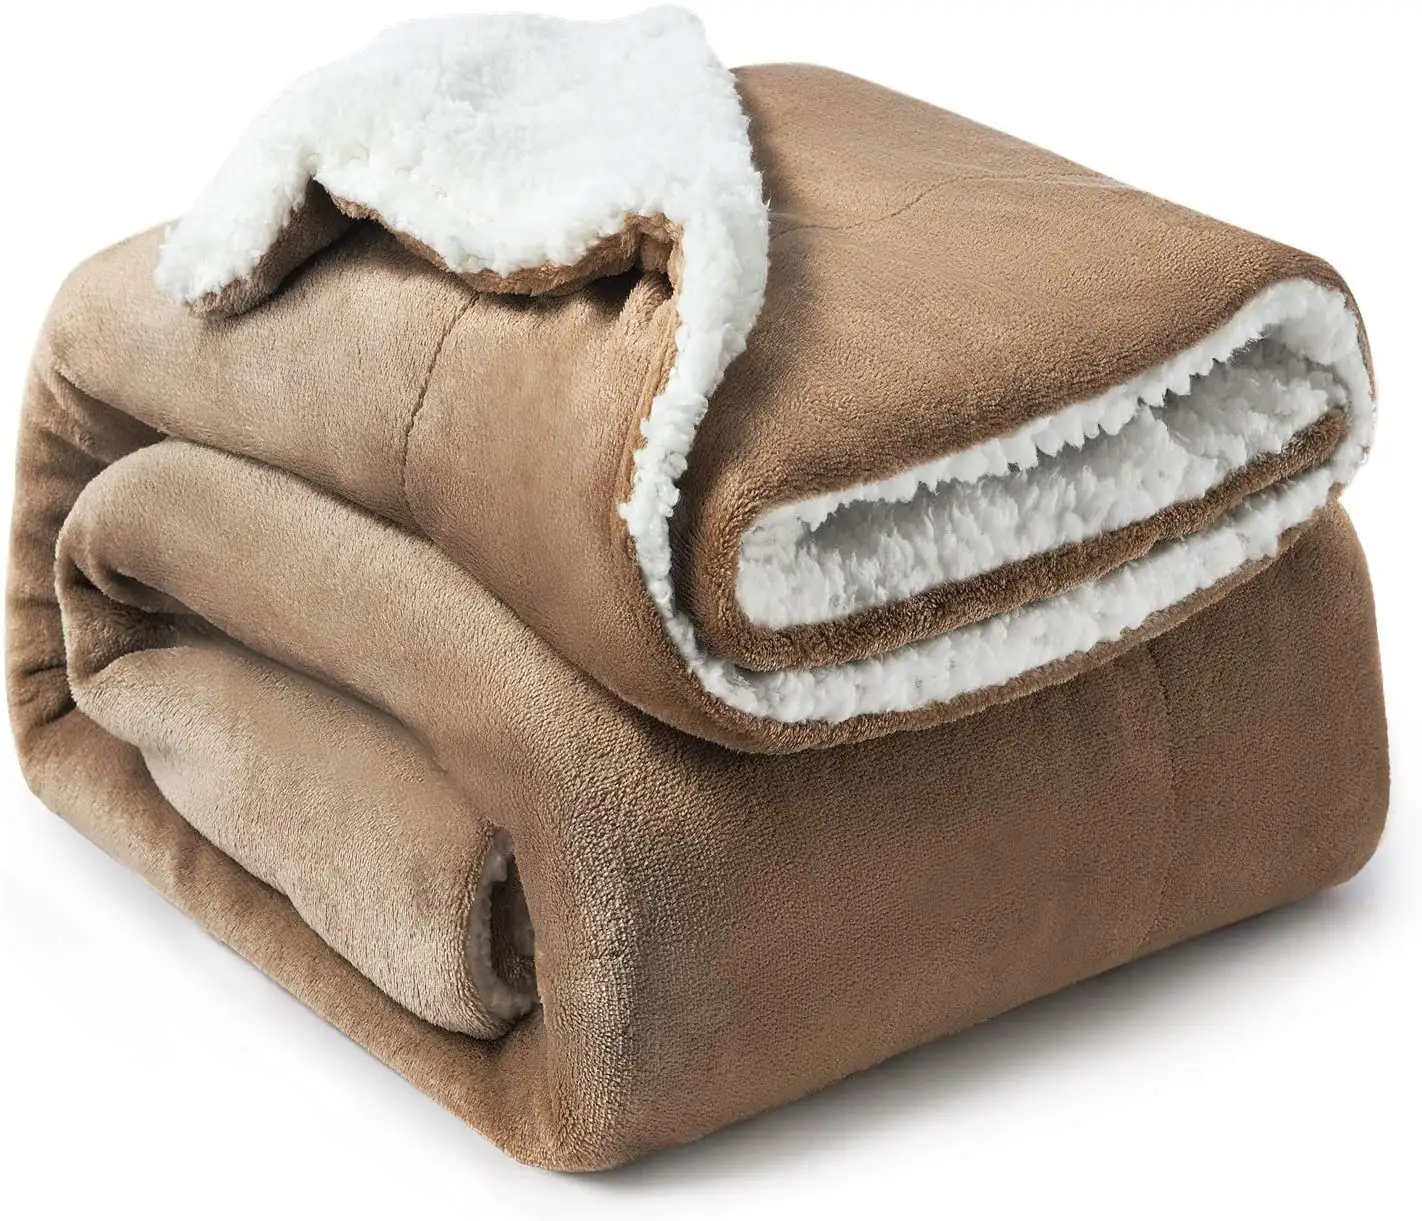 Battaniye toptan süper yumuşak kalın sıcak peluş flanel battaniyeler kış sherpa polar çift katmanlı battaniye